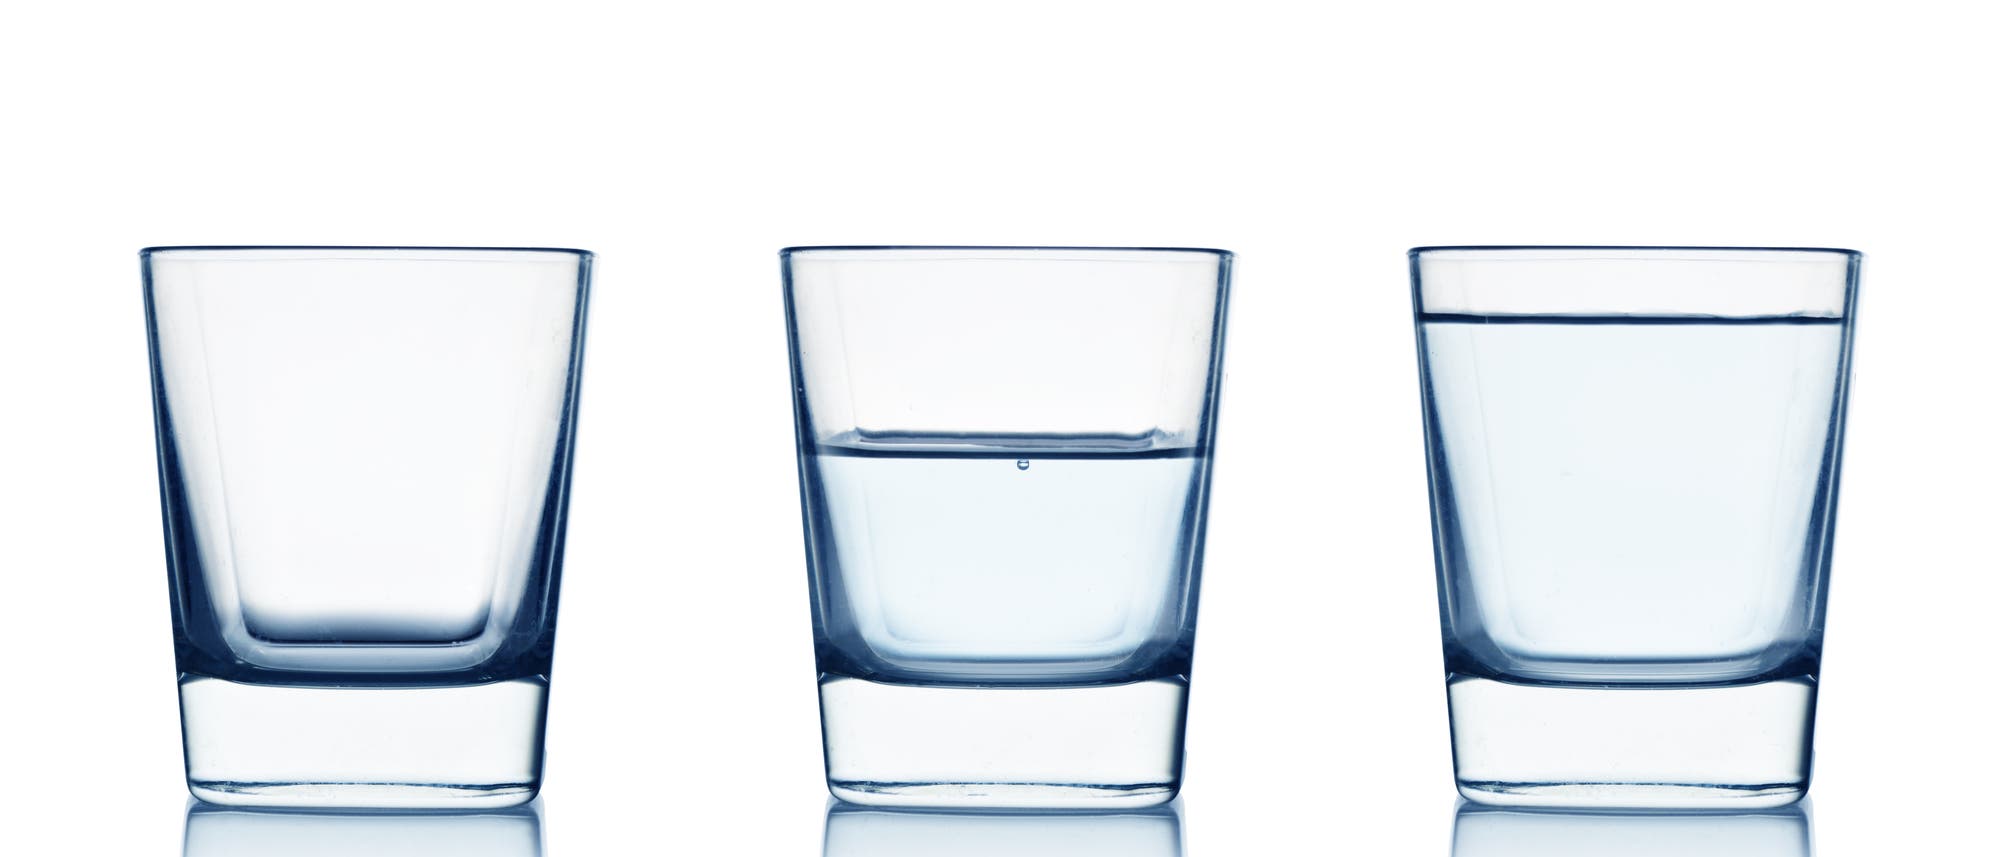 Drei Gläser: Voll, halb voll und leer